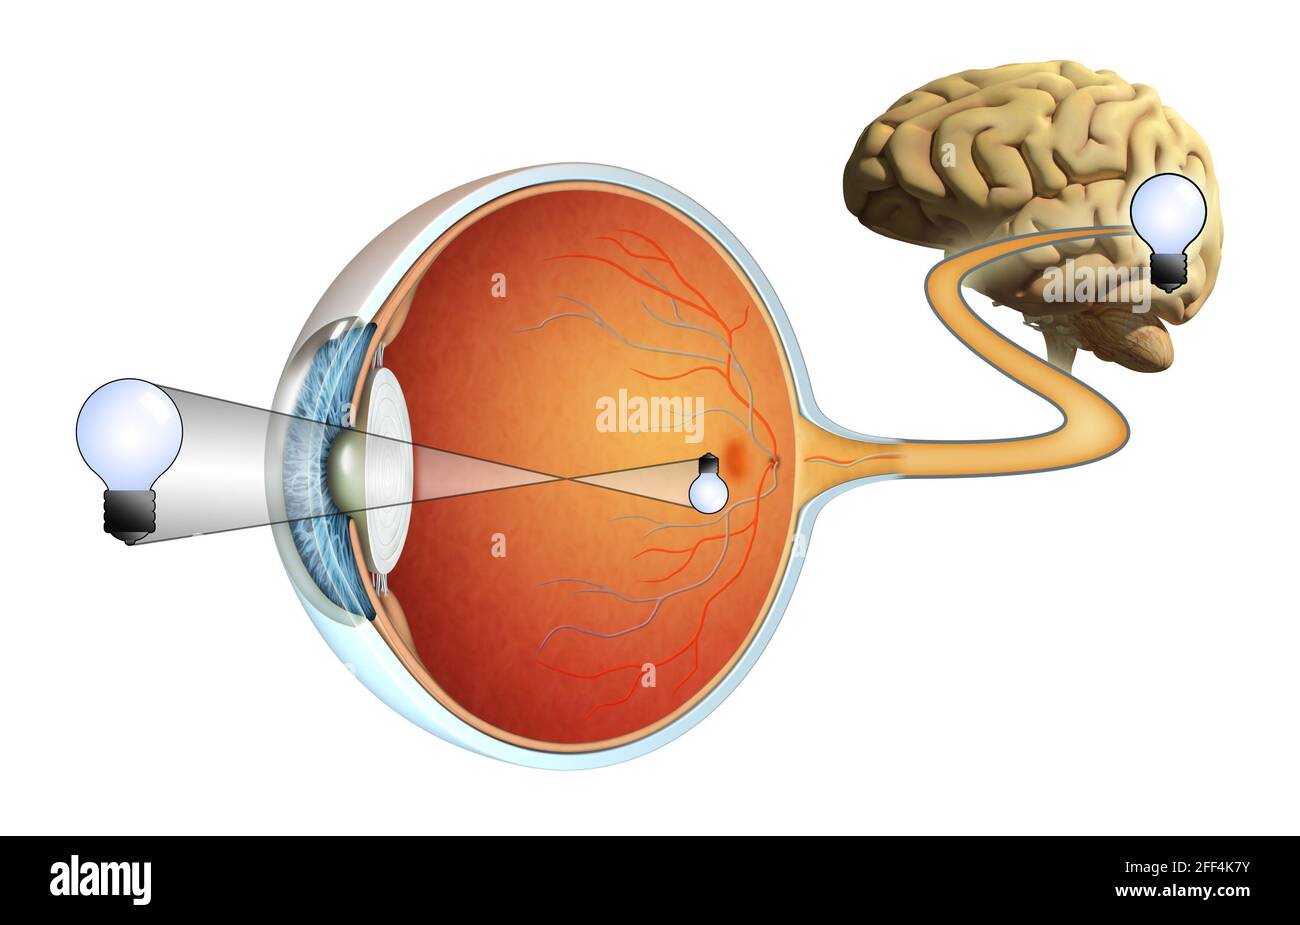 Comment les images sont capturées par nos yeux et traitées par notre cerveau. Illustration numérique. Banque D'Images